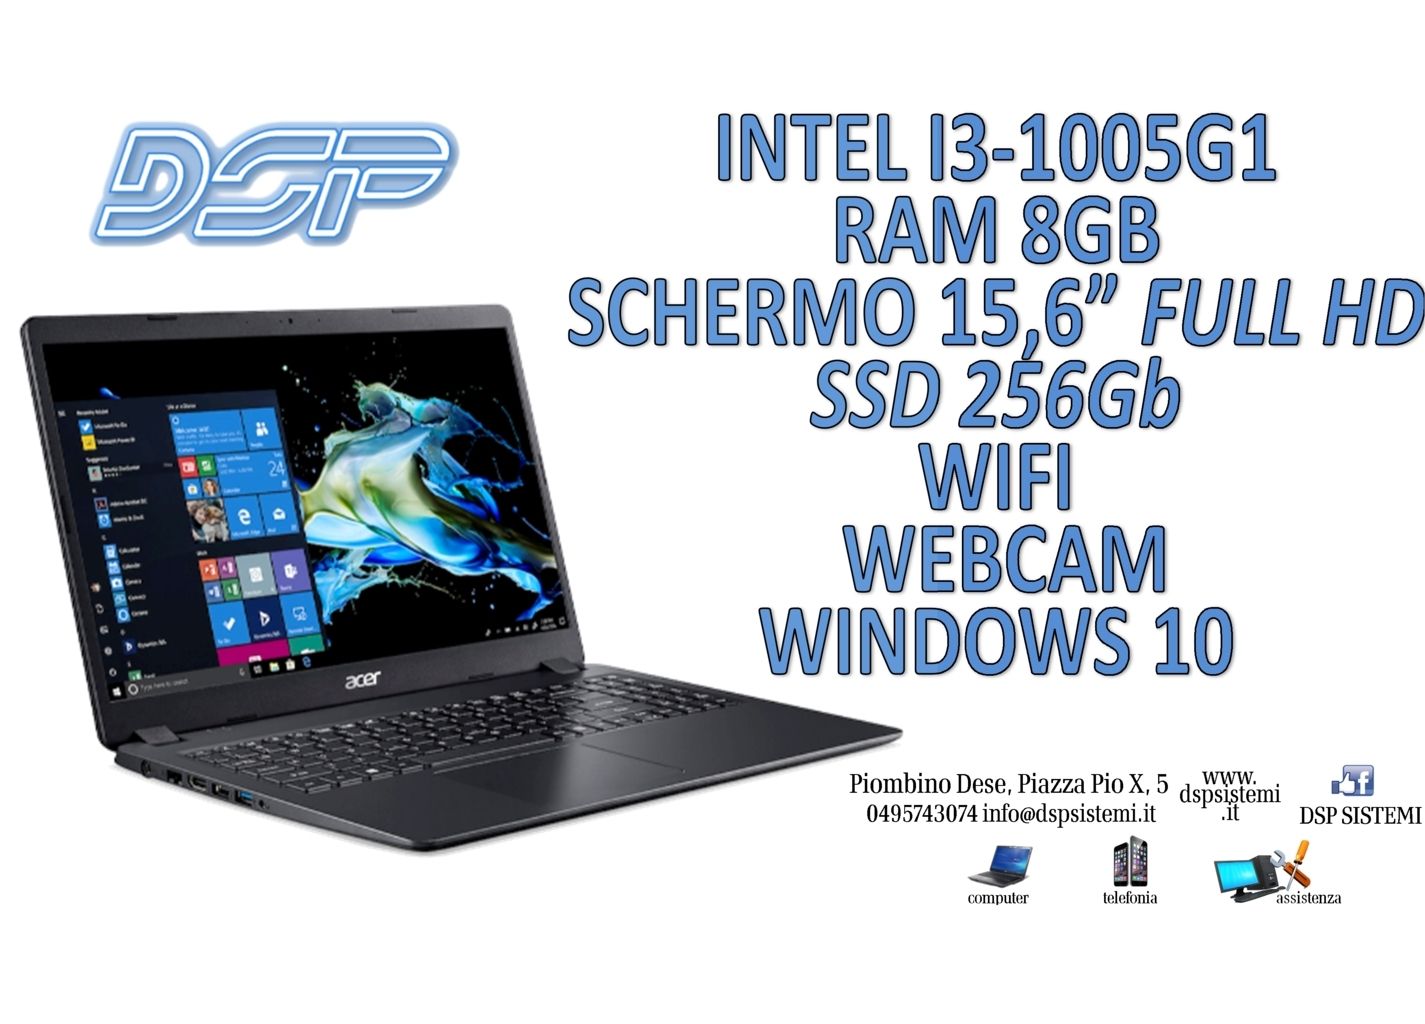 Disponibile Notebook I3 Serie 10 Ram 8Gb Ssd 256Gb Windows 10 e molti altri modelli !!! - DSP Sistemi Piombino Dese